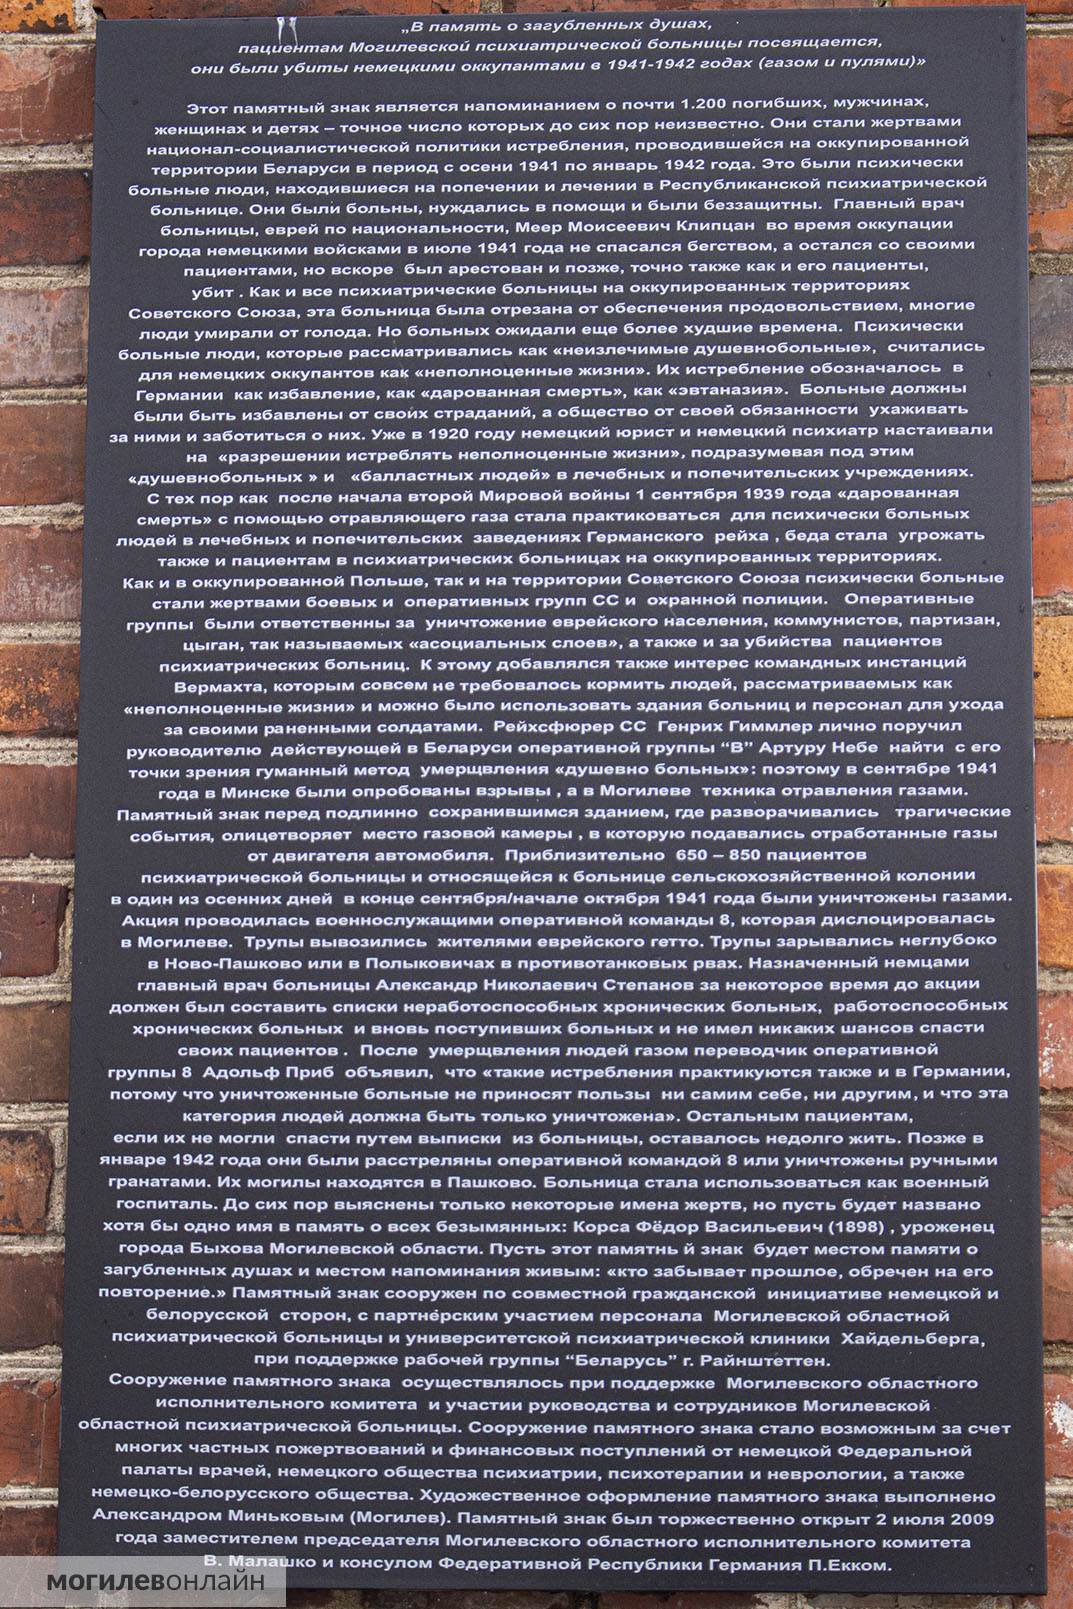 Мемориал жертвам нацизма на территории Могилевской областной психиатрической больницы, текст на русском языке